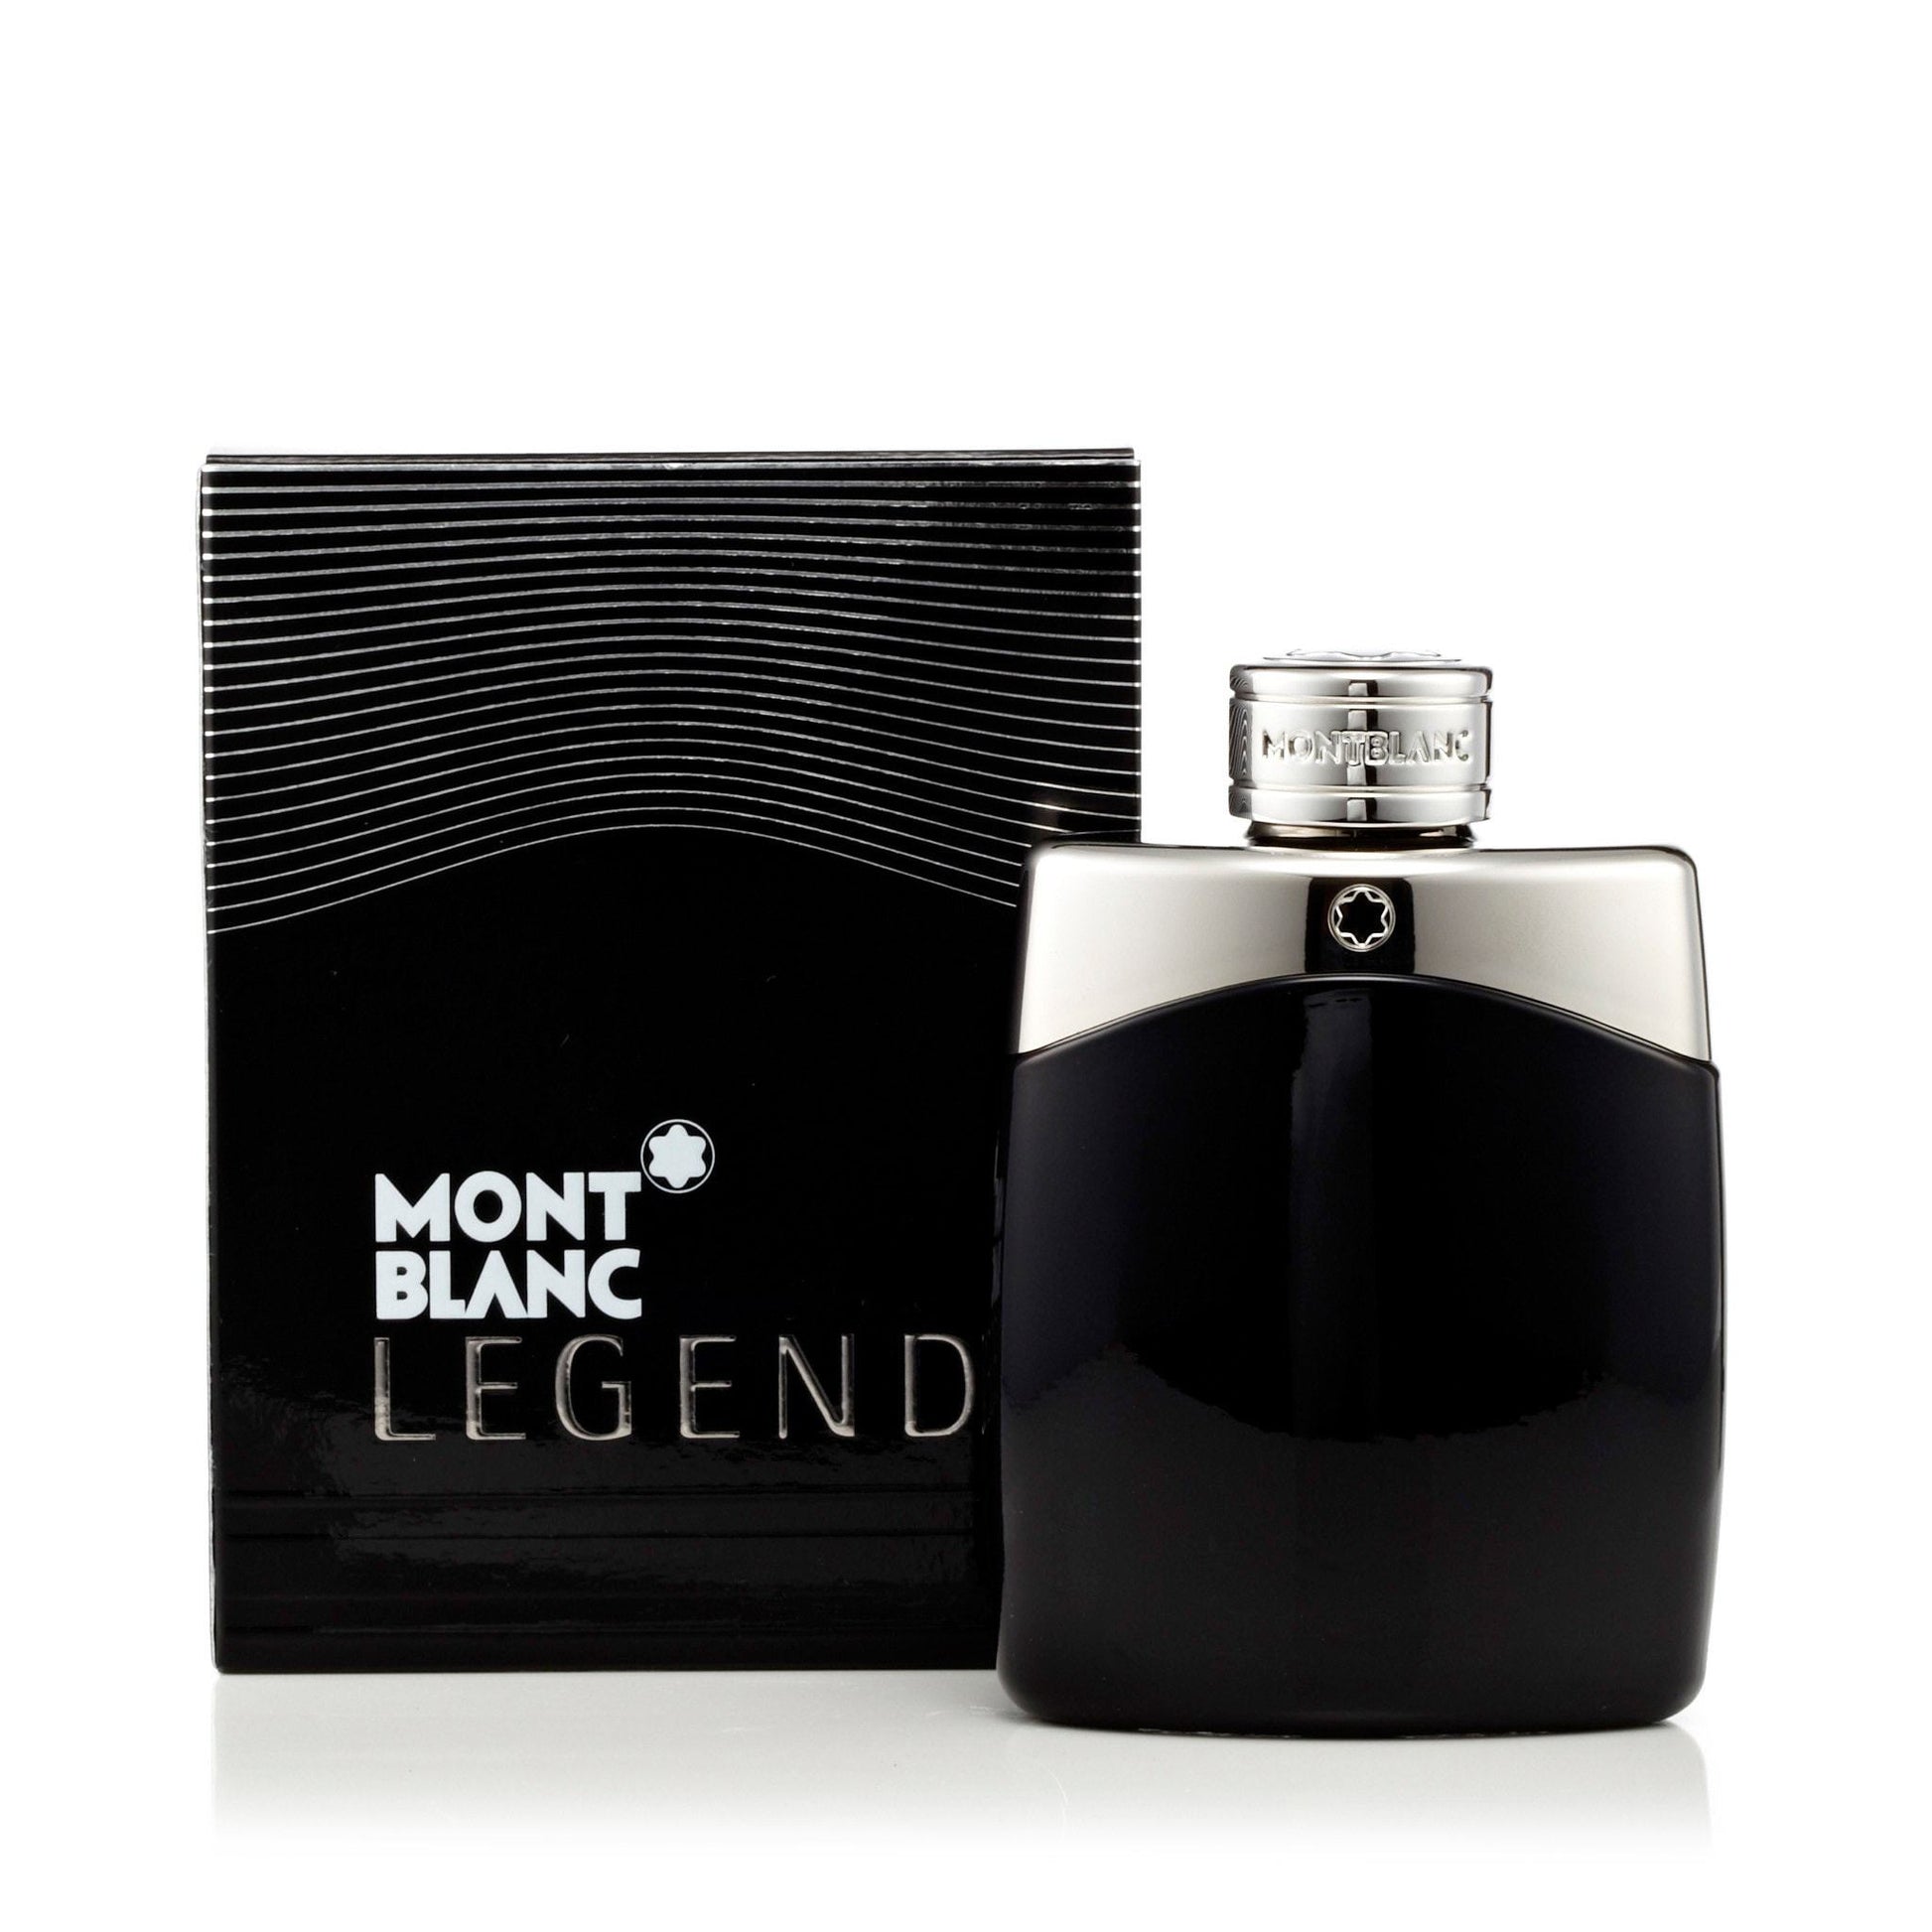 Legend Eau de Toilette Spray for Men by Montblanc, Product image 9